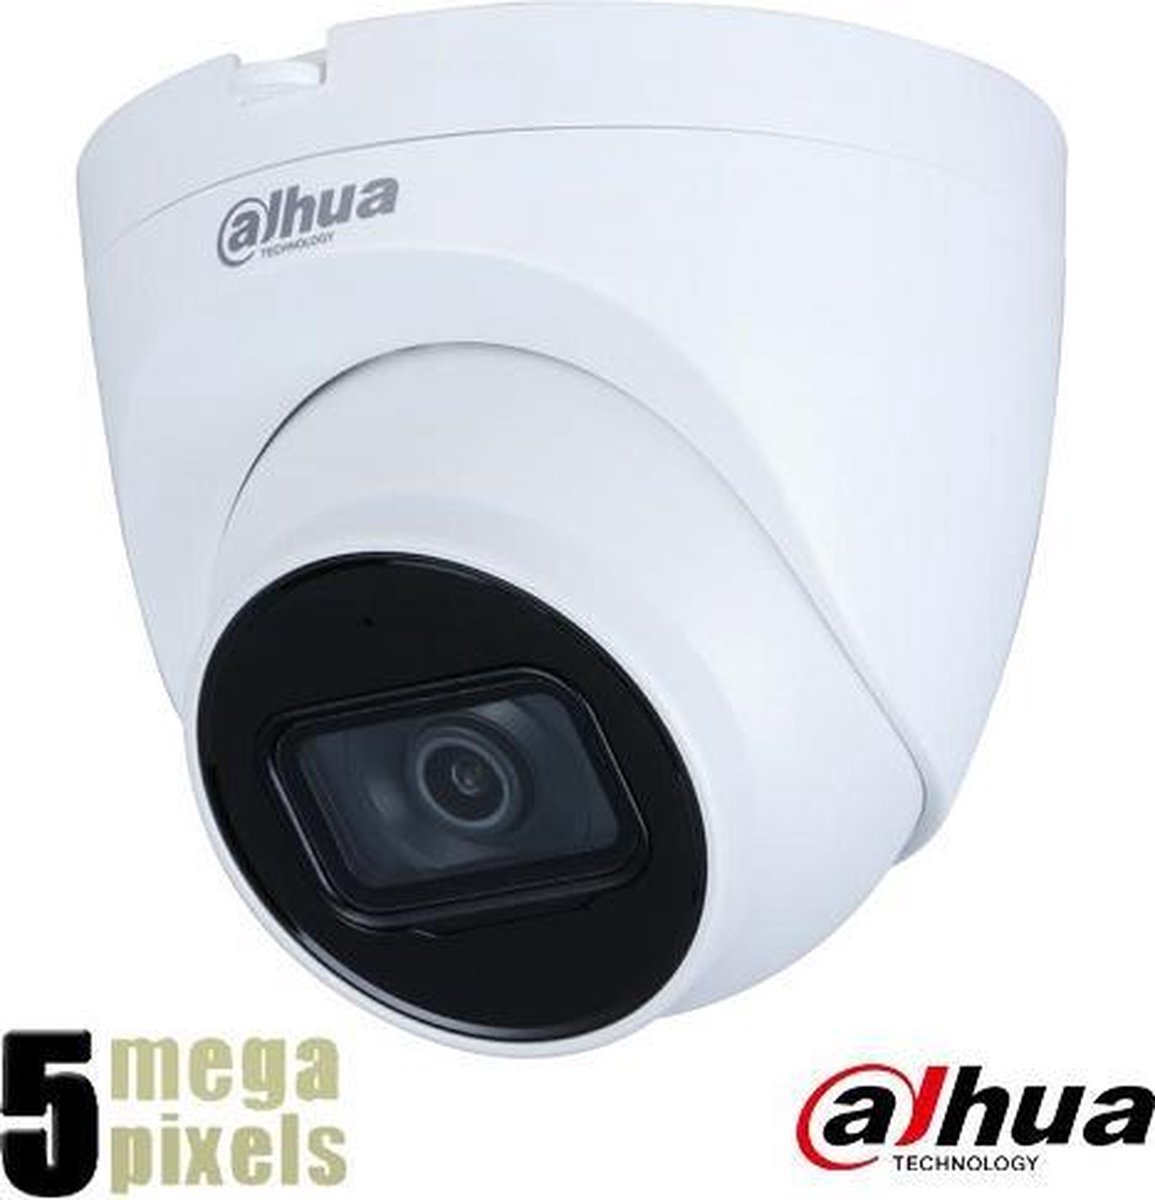 Dahua 5 megapixel IP dome camera - 30 meter nachtzicht - 2.8mm lens - Starlight